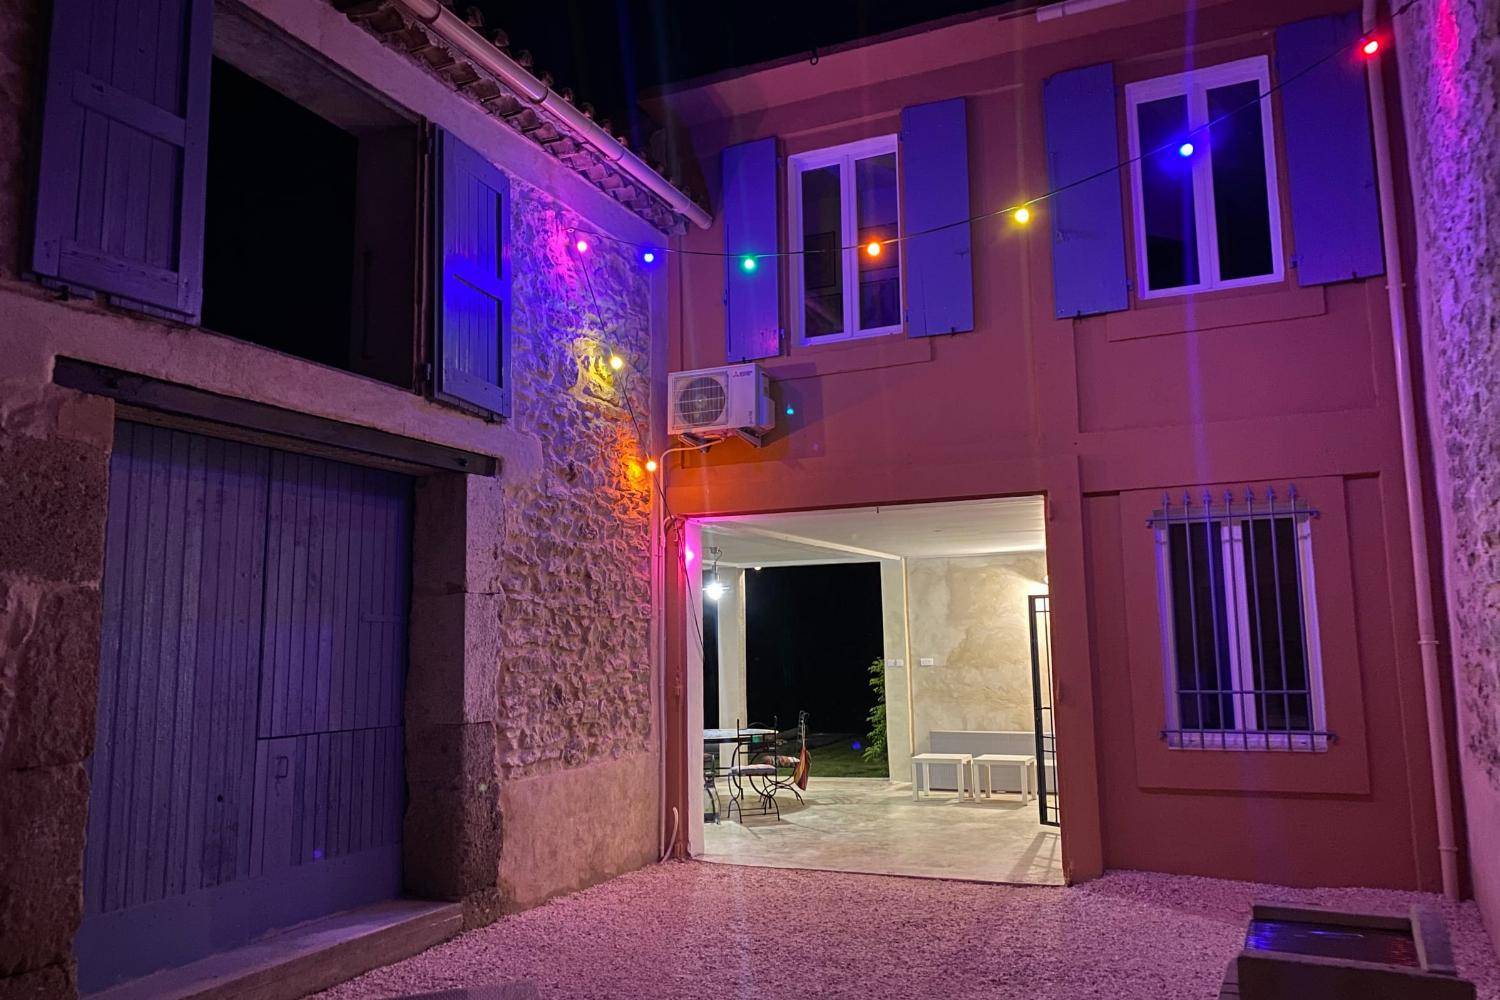 Terrasse le soir | Maison de vacances dans le sud de la France